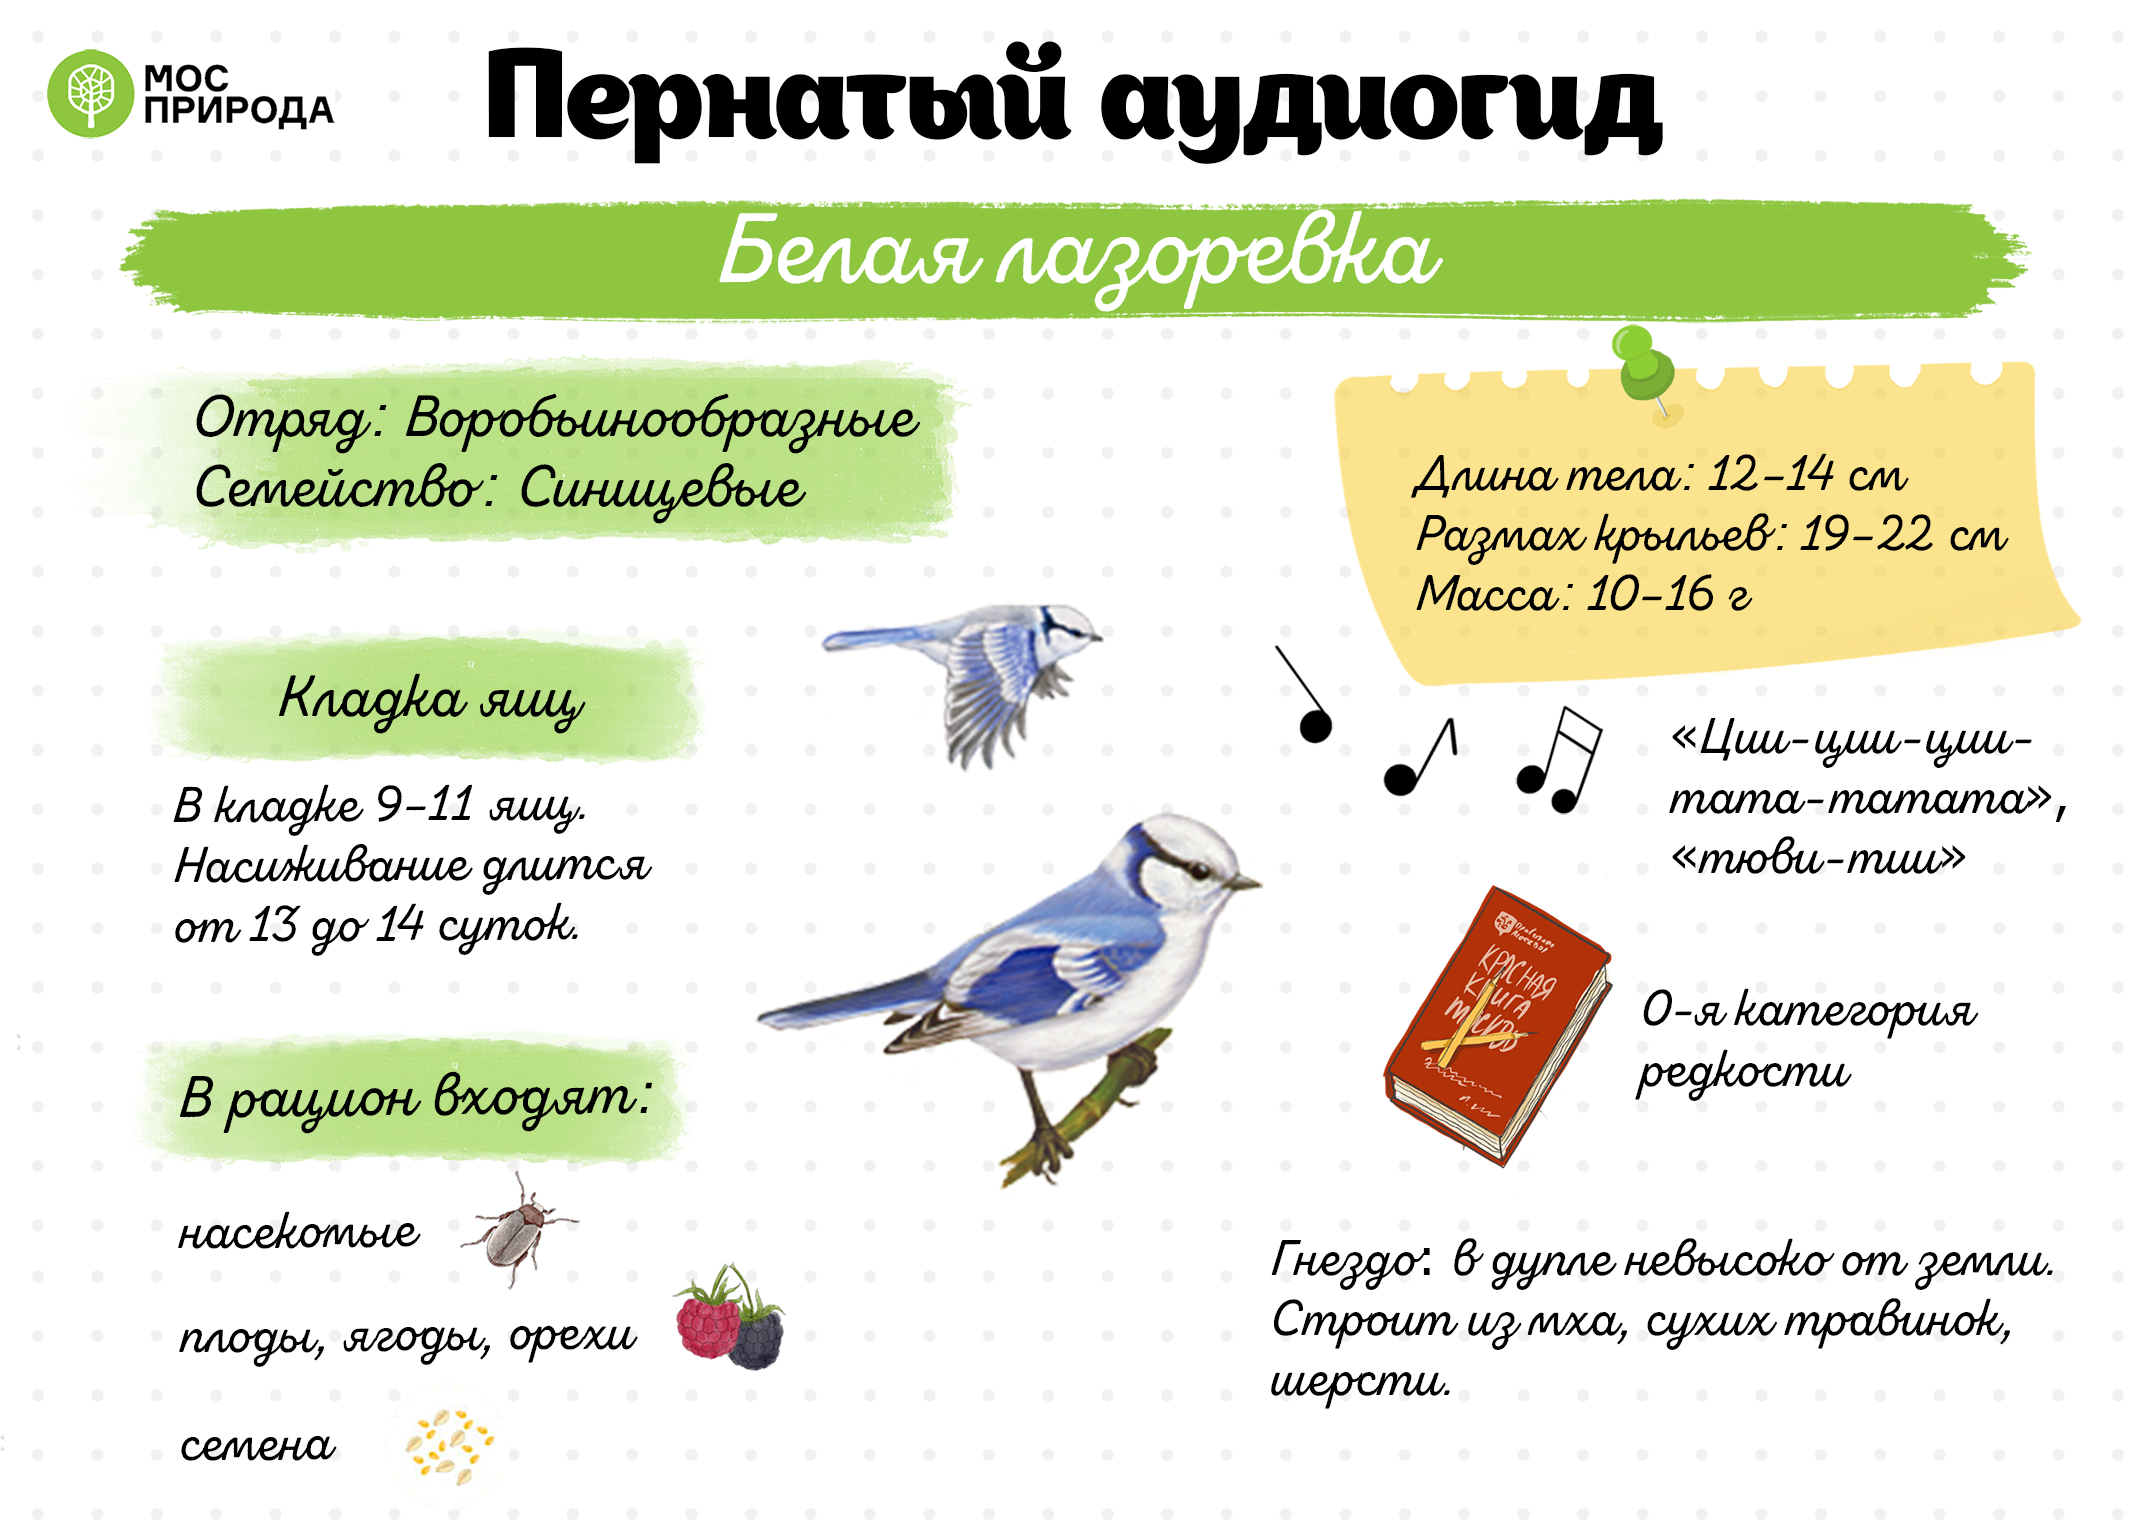 Пернатый аудиогид: семь видов синиц можно встретить зимой в Москве - фото 8